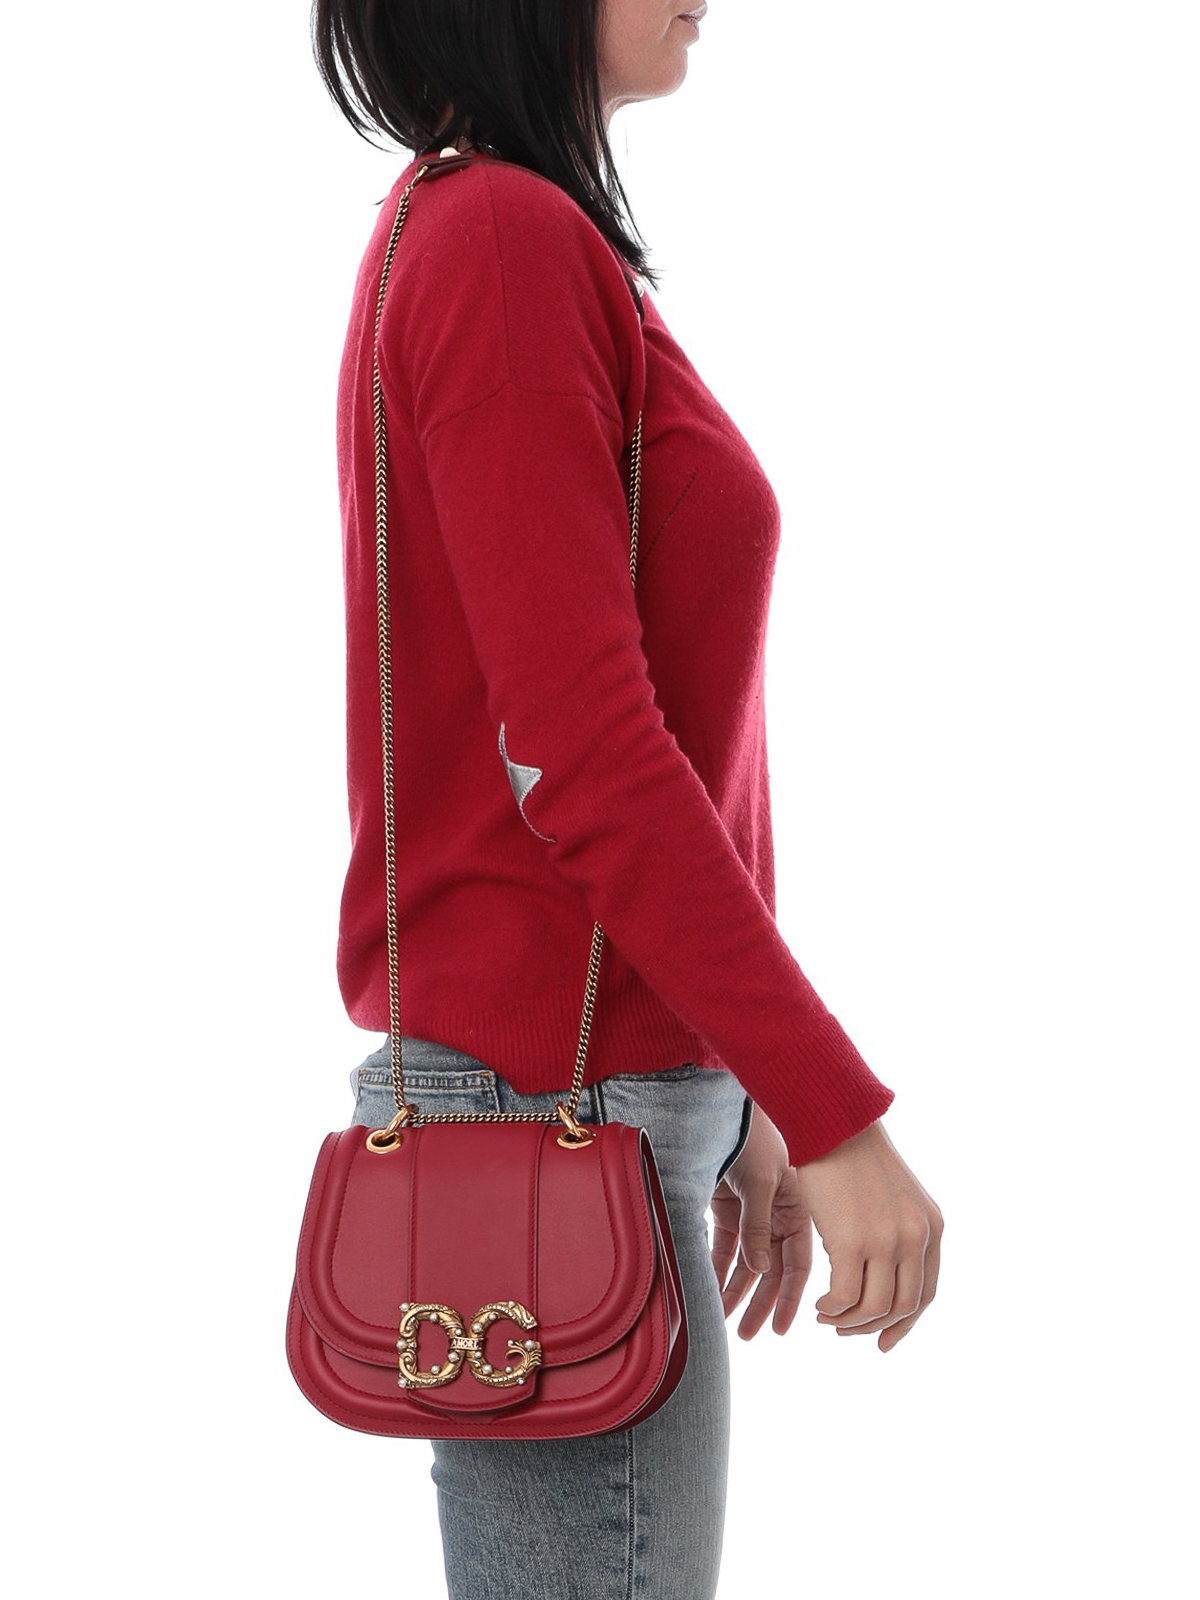 DG Amore red calfskin shoulder bag 